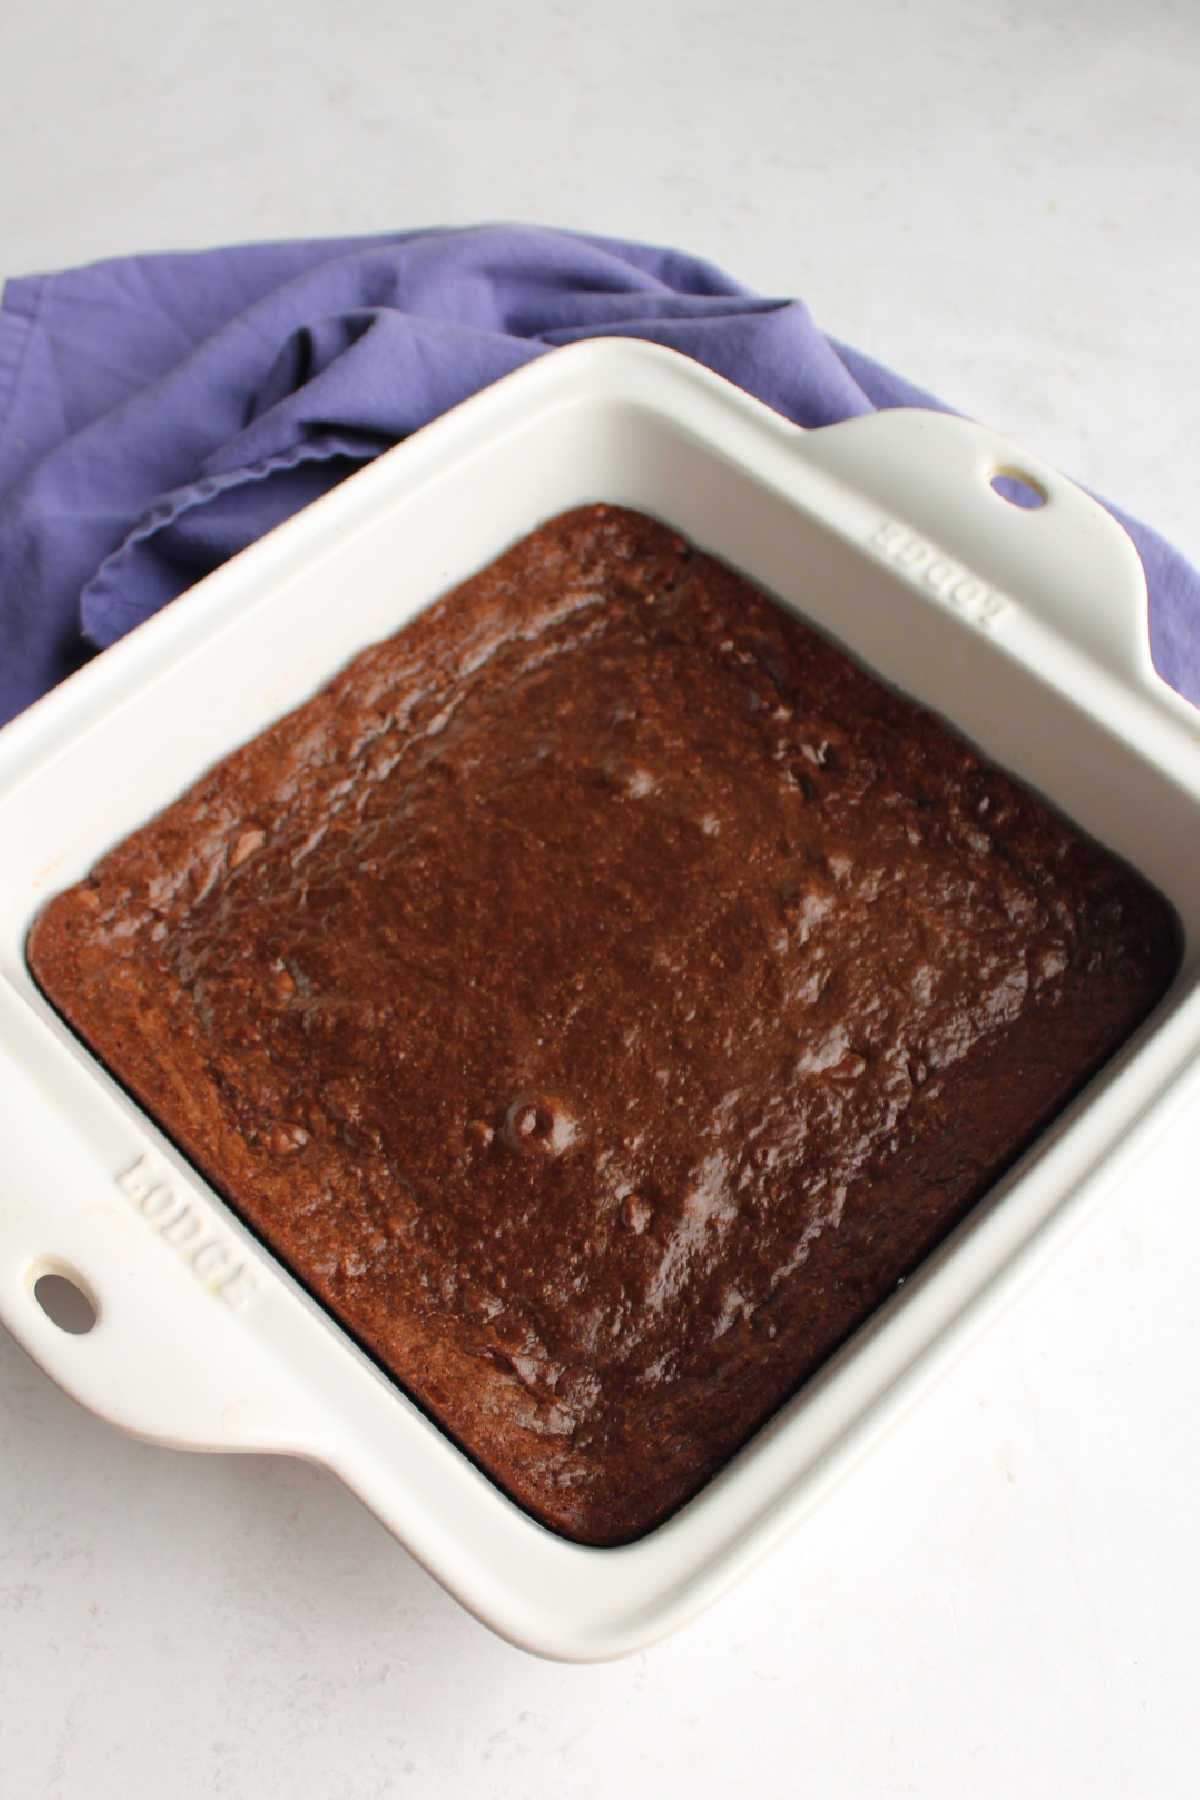 pan of freshly baked brownies with condensed milk baked inside.